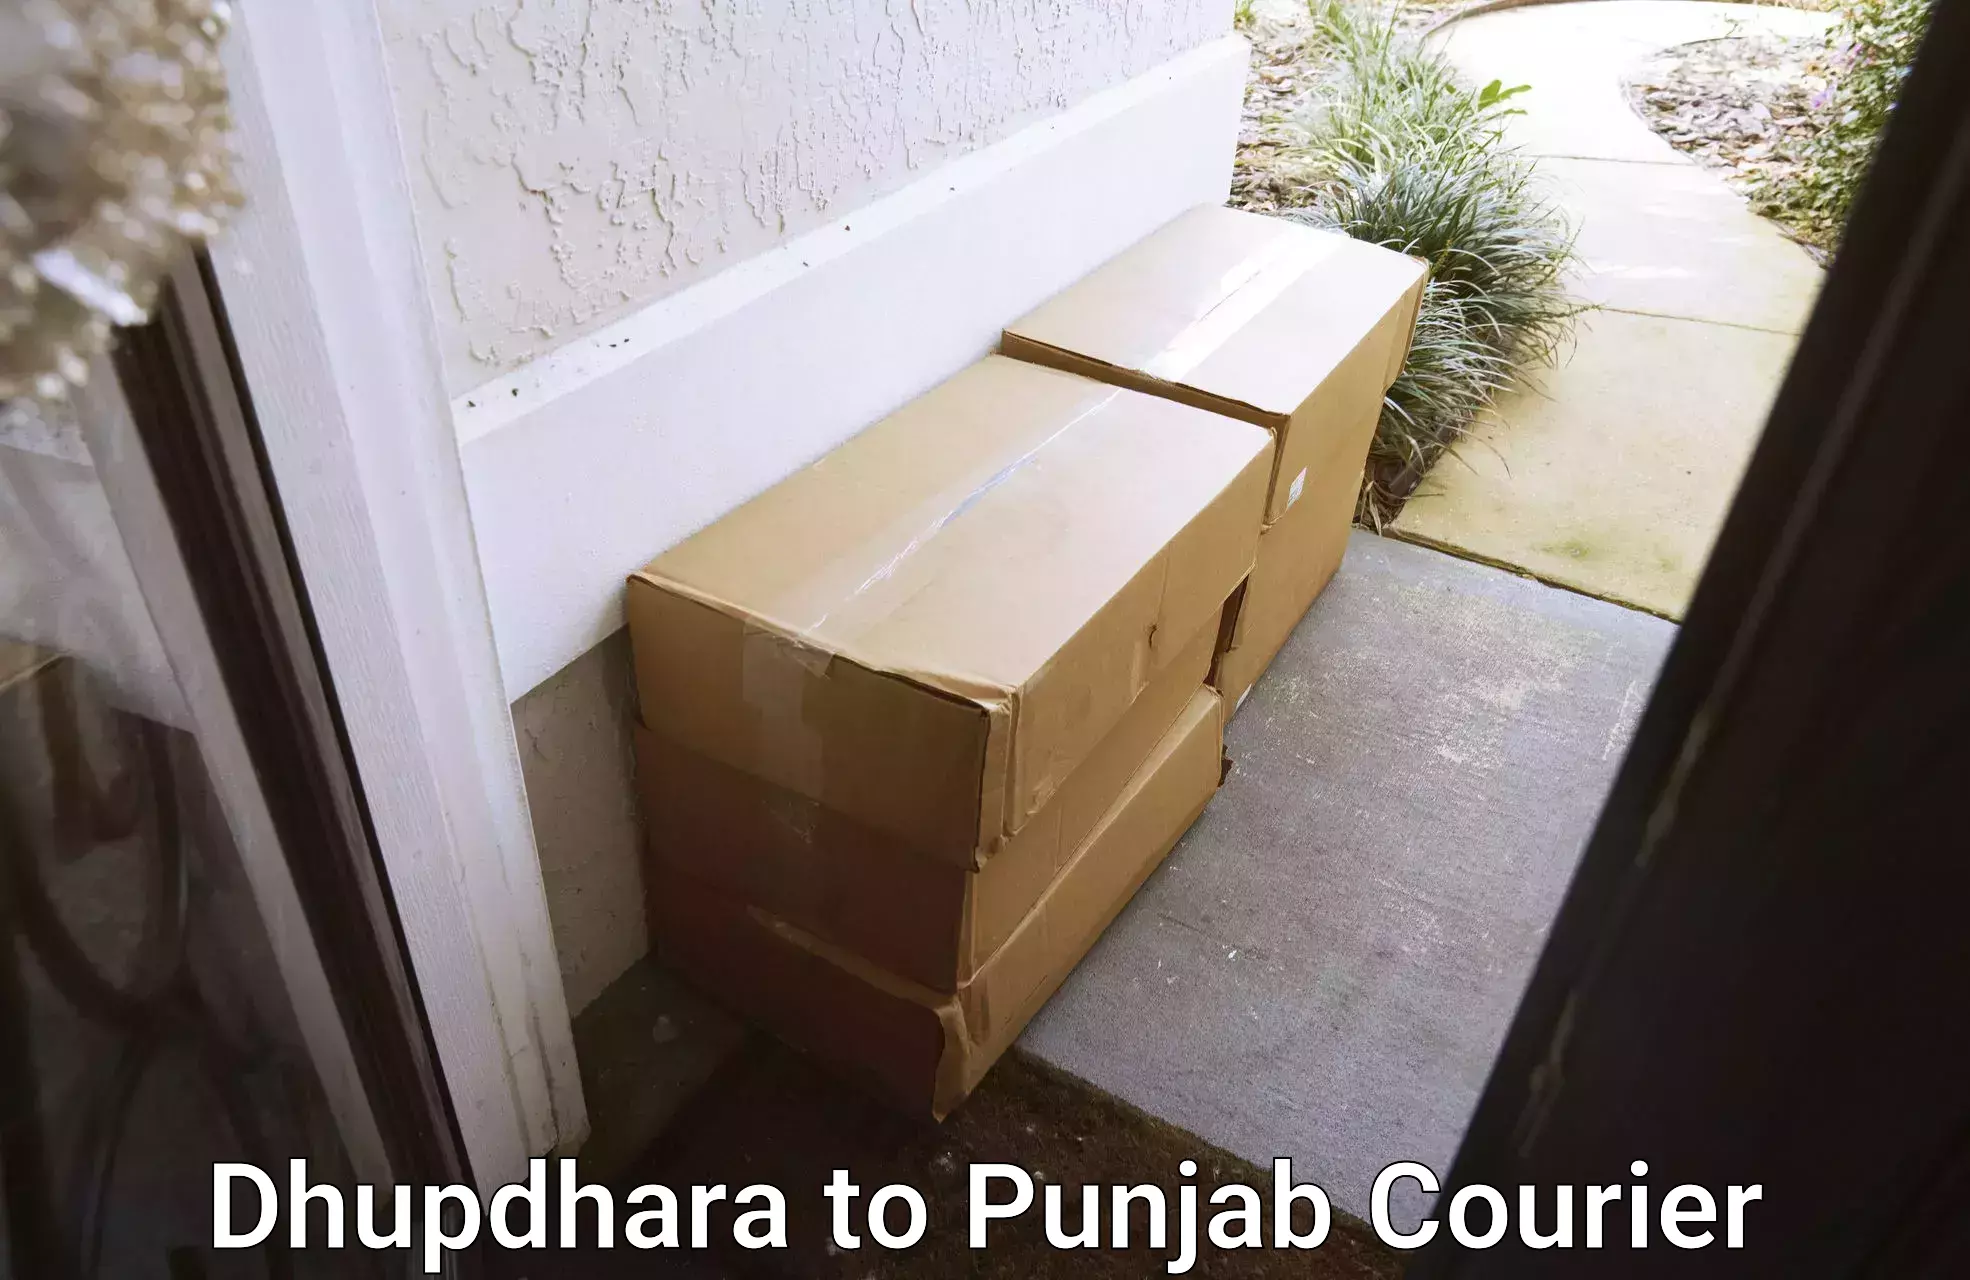 Pharmaceutical courier Dhupdhara to Punjab